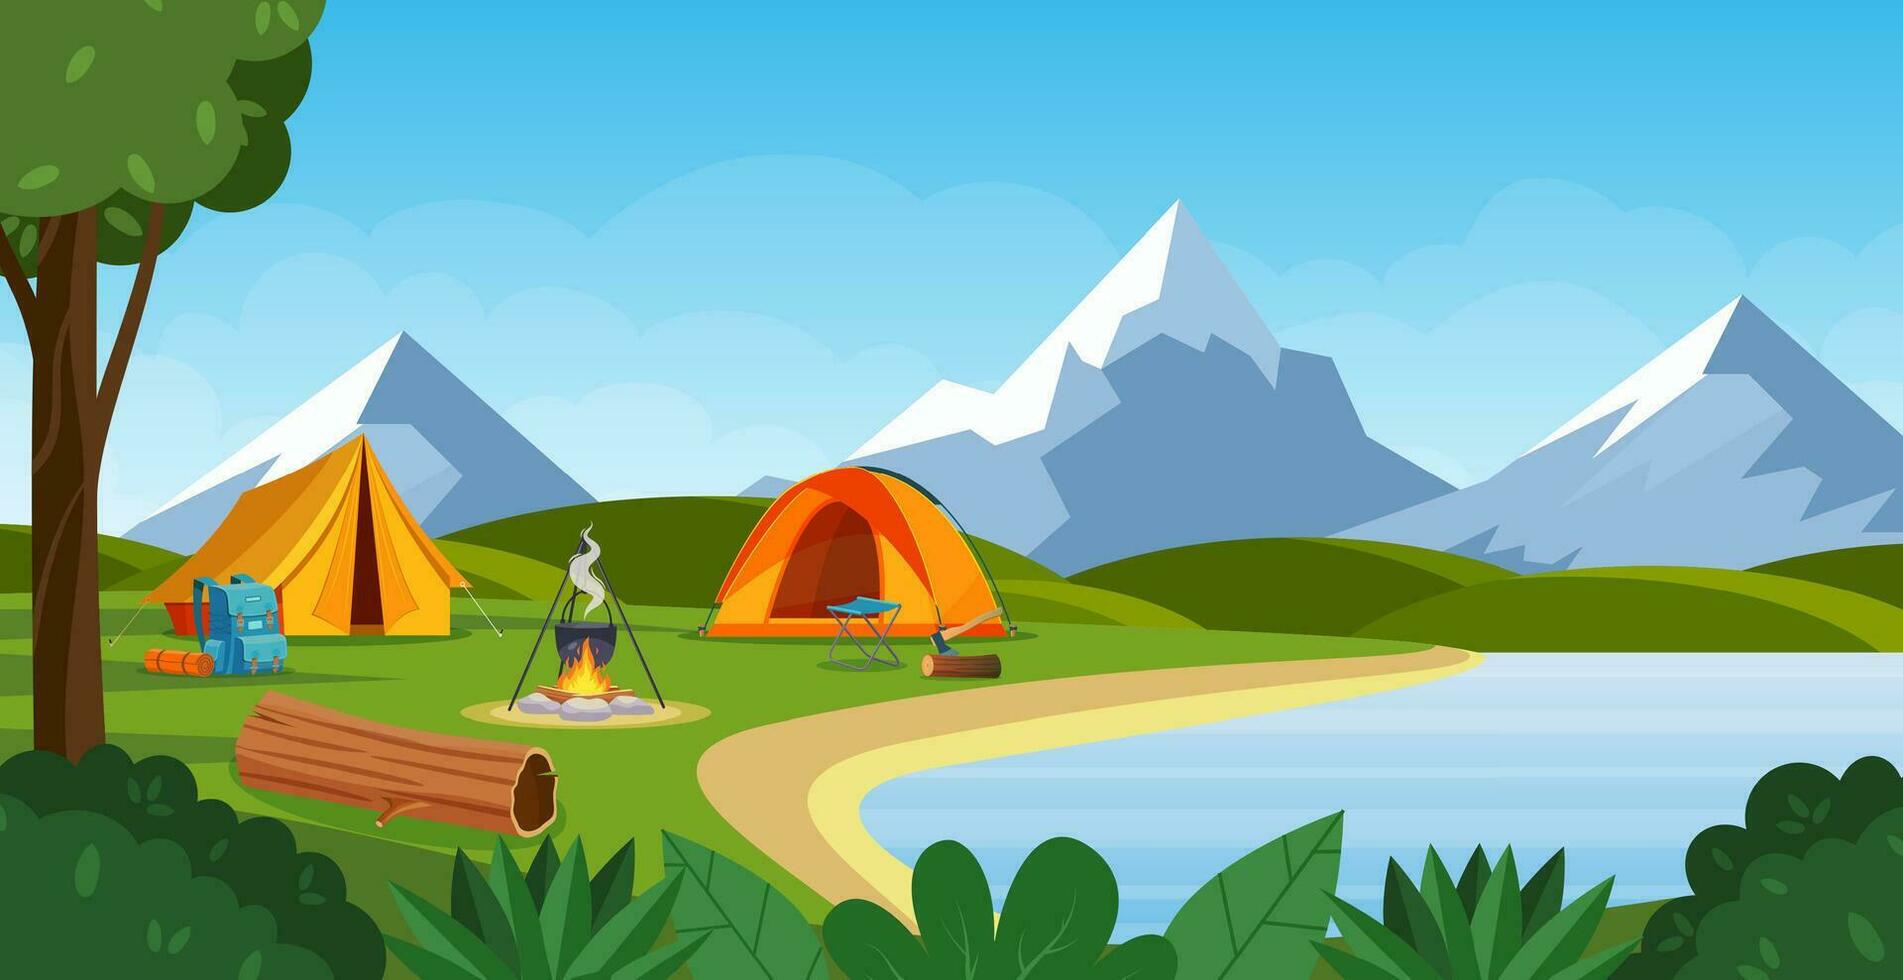 été camp avec feu, tente, sac à dos . dessin animé paysage avec montagne, forêt et site de camp. équipement pour voyage, randonnée. vecteur illustration dans plat style